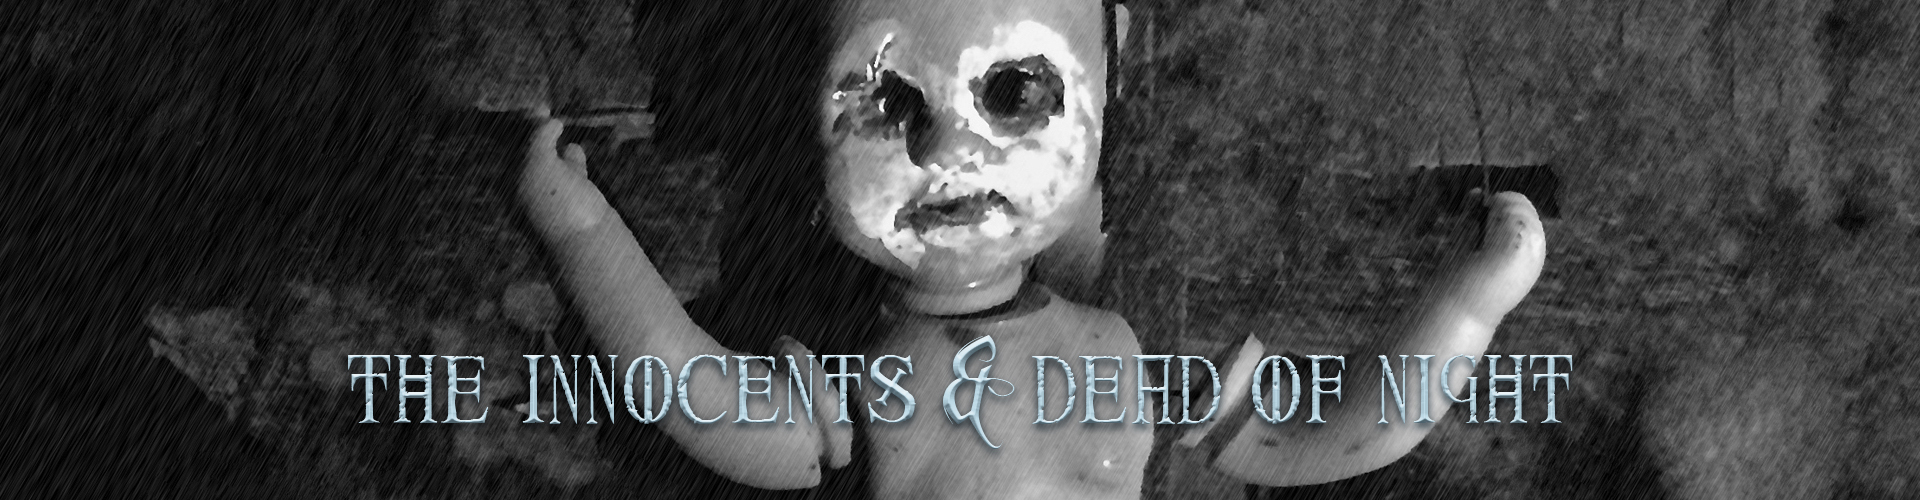 The Innocents & Dead of Night header